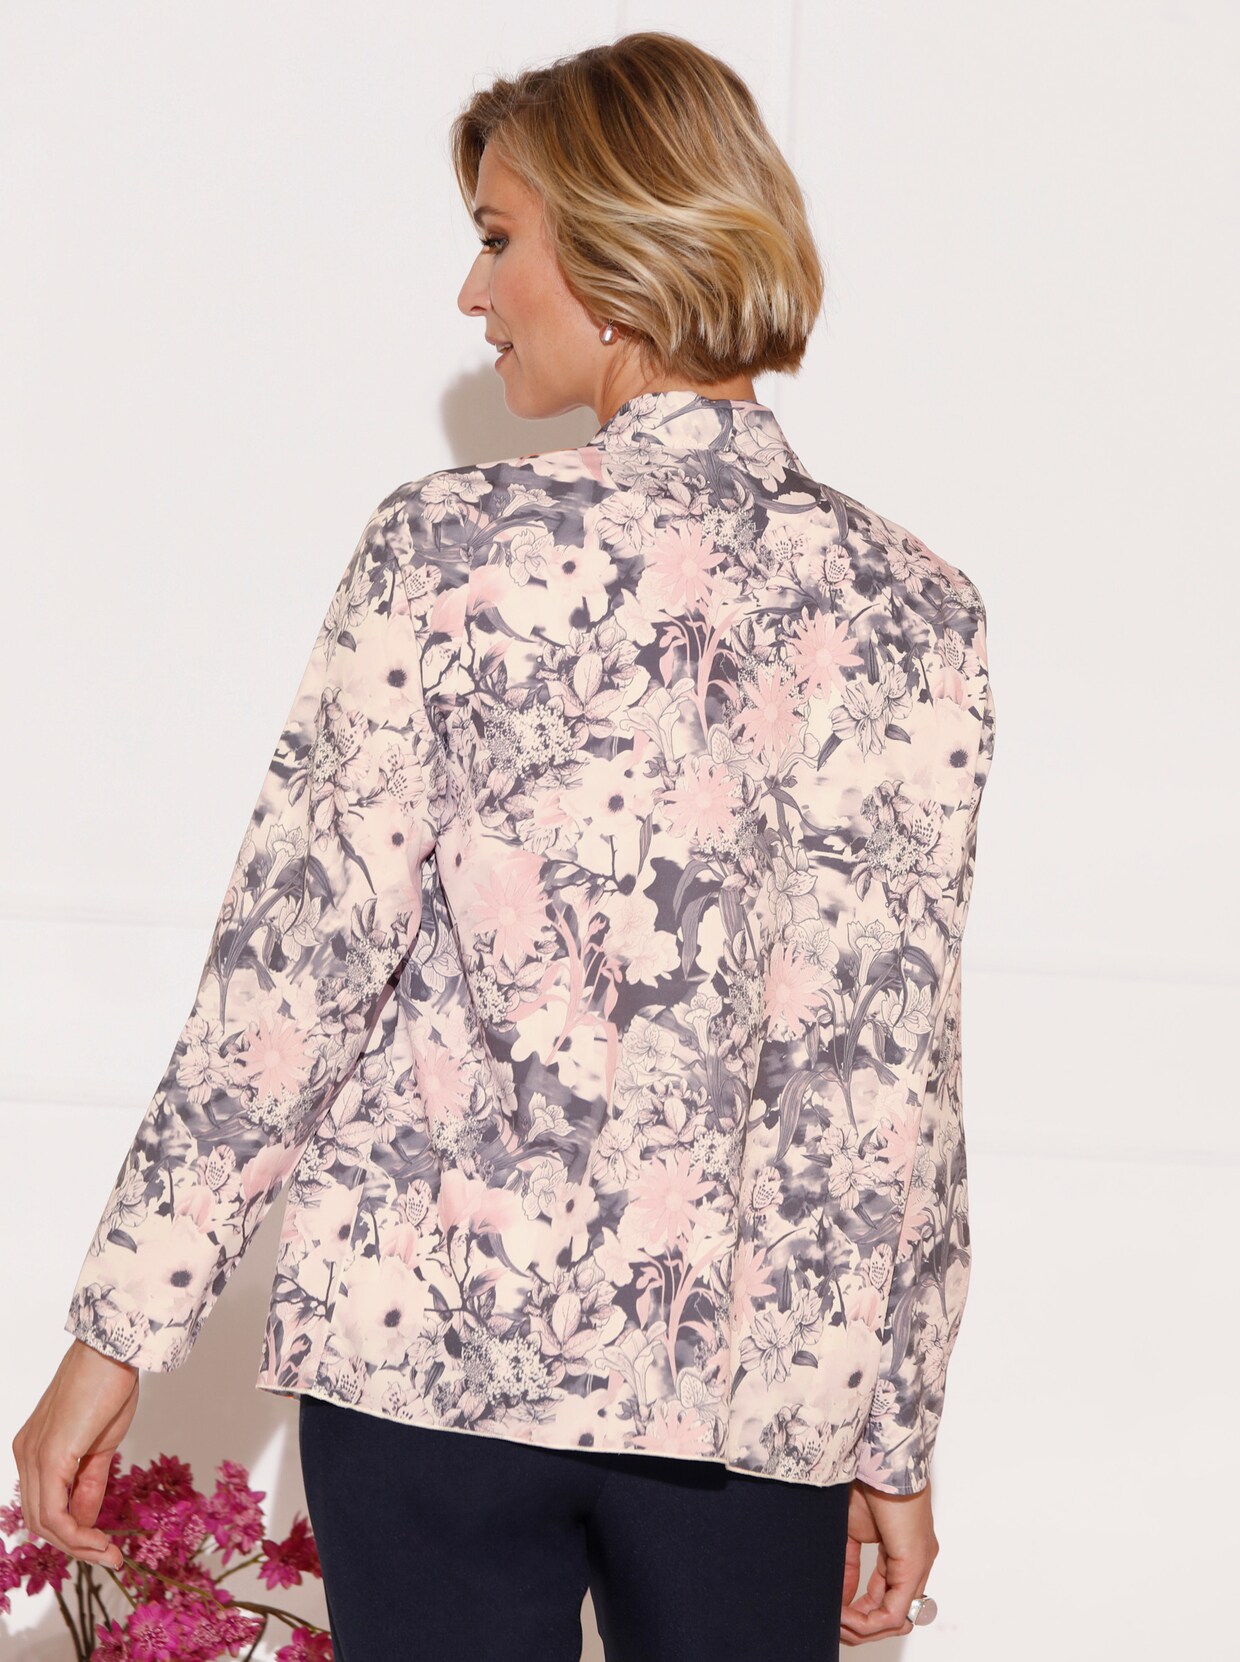 Lange blouse - roze/grijs geprint